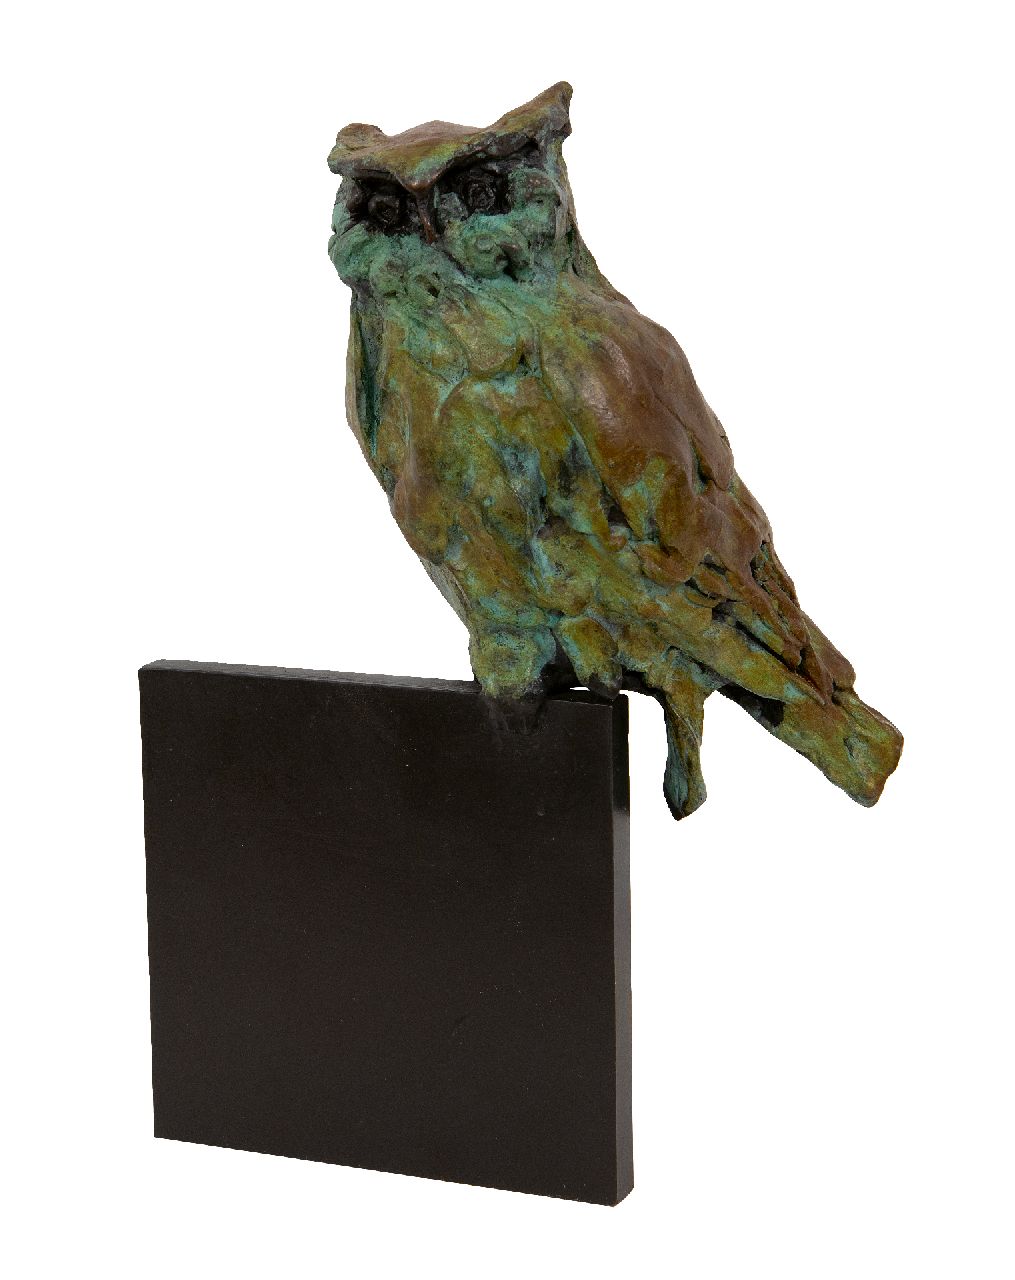 Laan J. van der | Jacqueline van der Laan, Rustende oehoe, gepatineerd brons 21,0 x 14,0 cm, gesigneerd gemonogrammeerd achterzijde